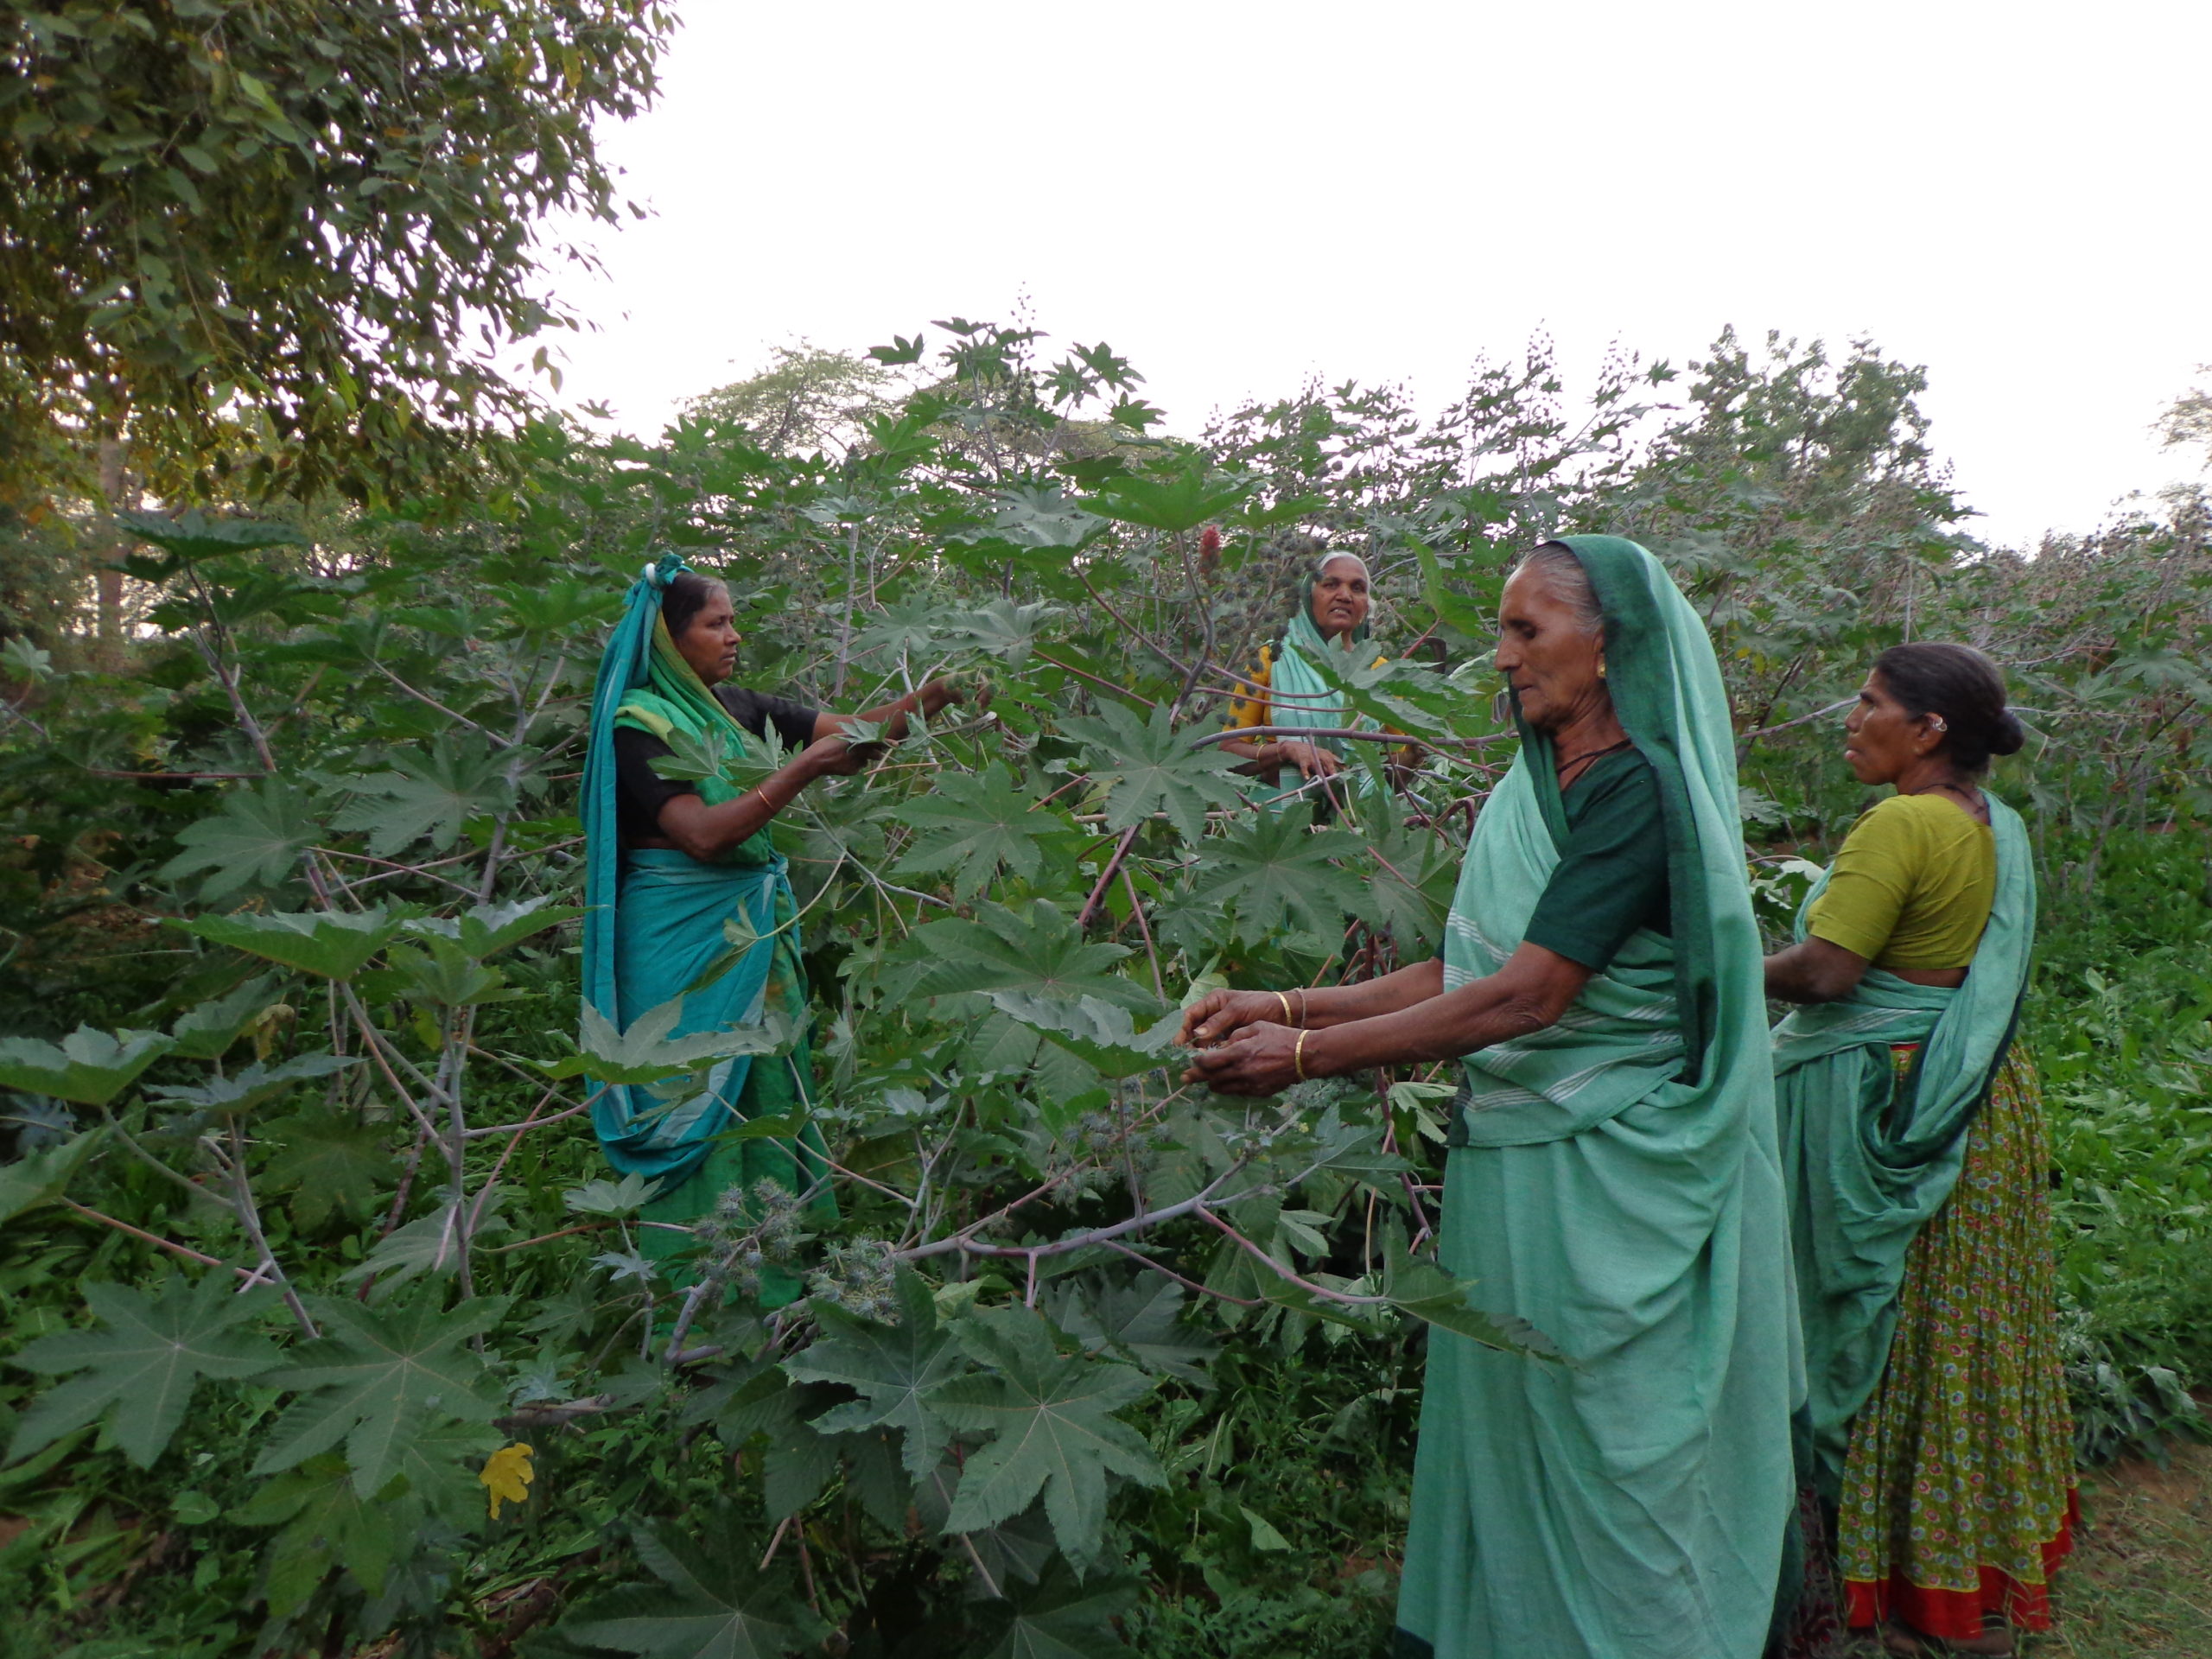 Women farmers tending crops